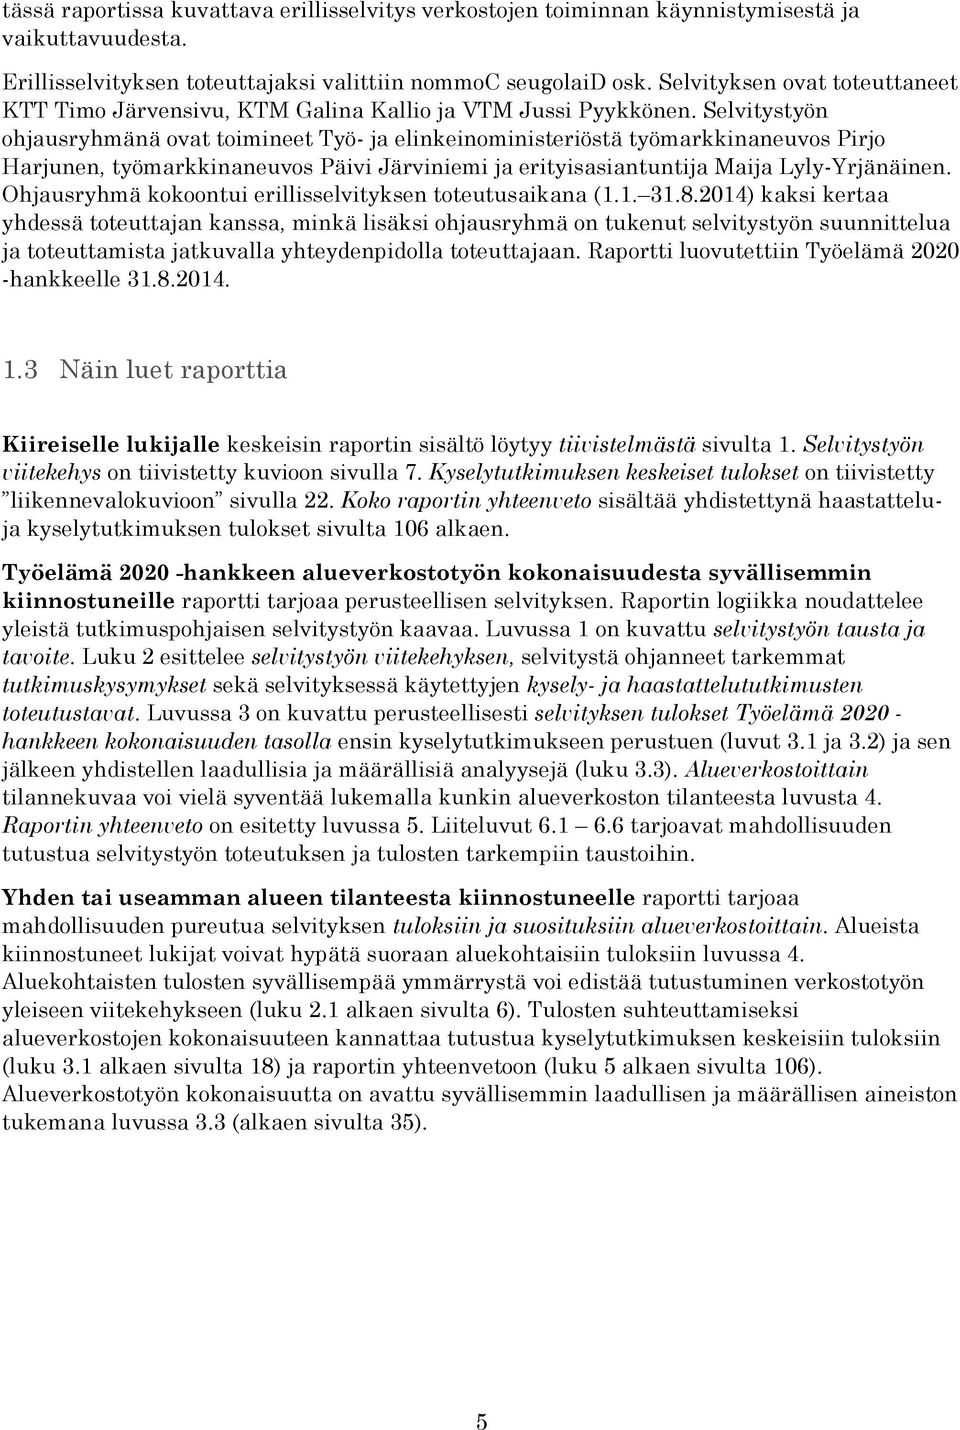 Selvitystyön ohjausryhmänä ovat toimineet Työ- ja elinkeinoministeriöstä työmarkkinaneuvos Pirjo Harjunen, työmarkkinaneuvos Päivi Järviniemi ja erityisasiantuntija Maija Lyly-Yrjänäinen.